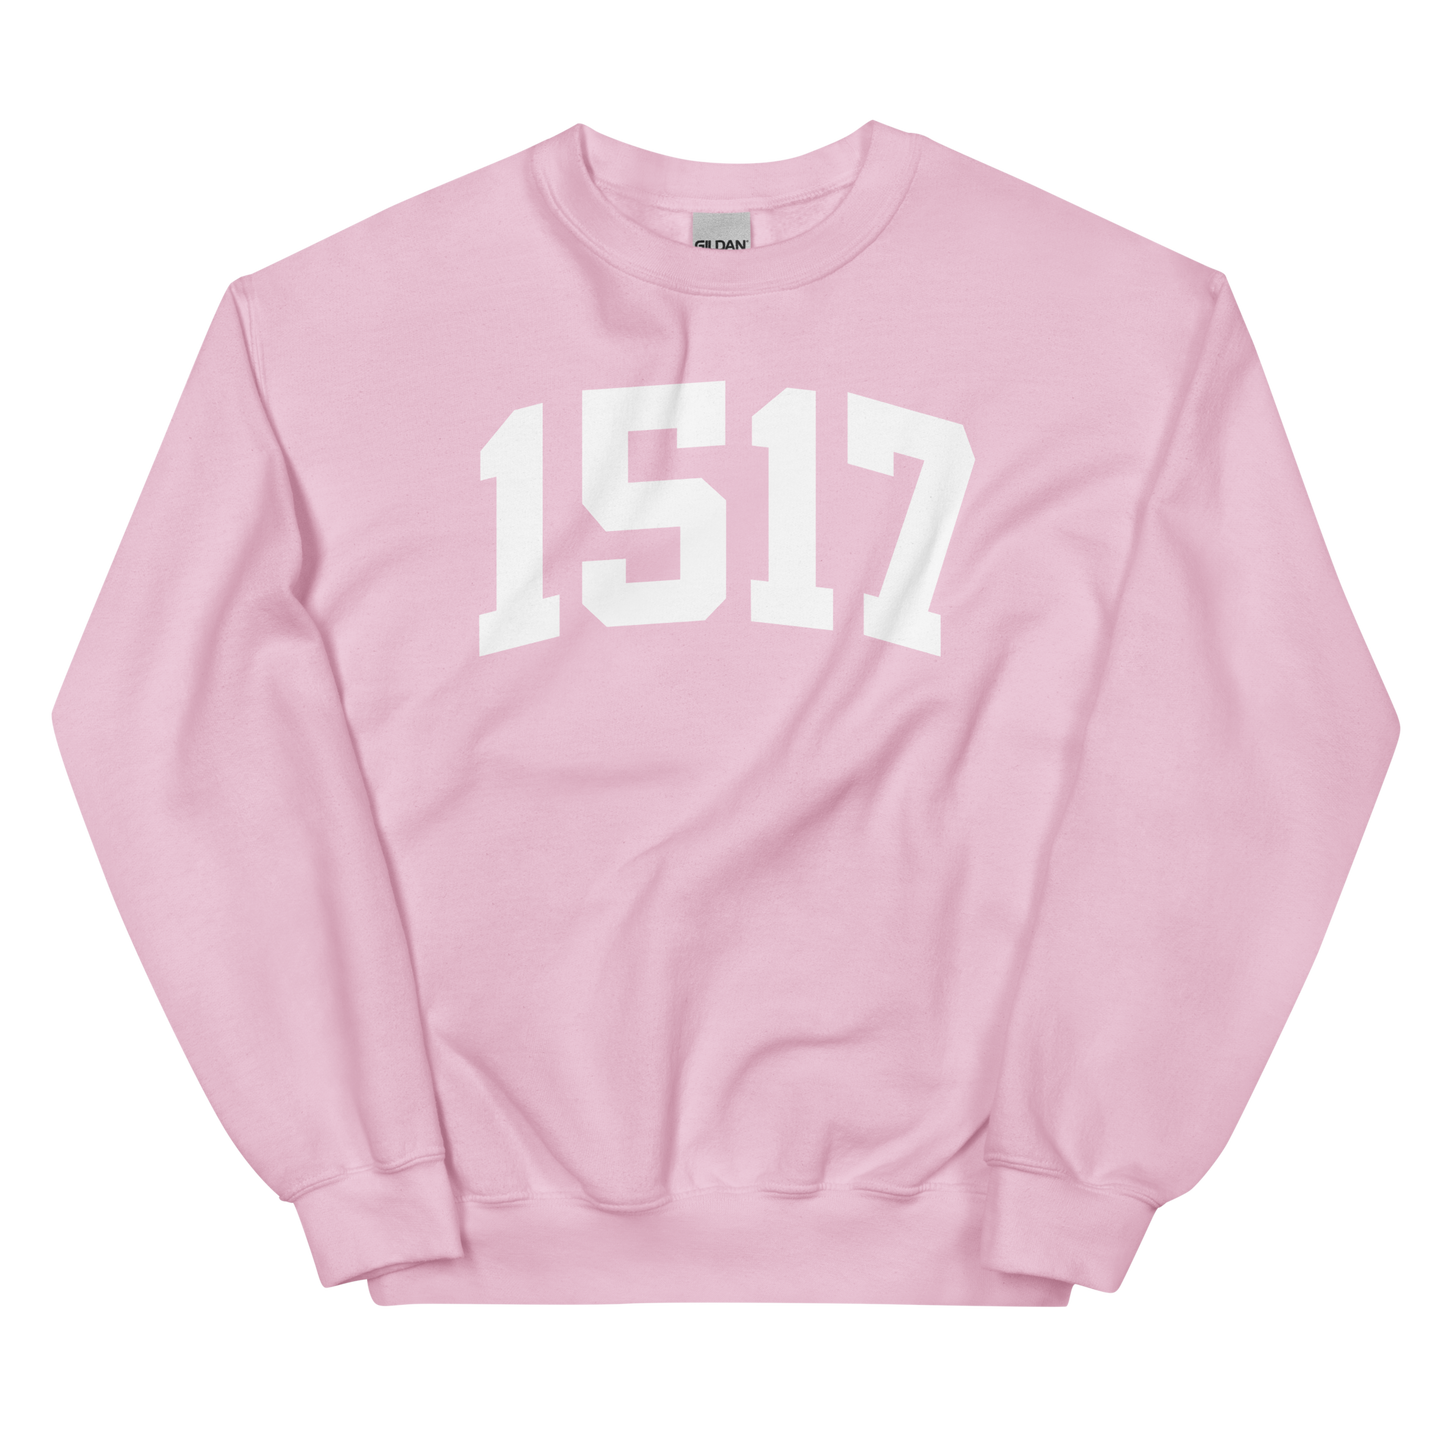 1517 Sweatshirt